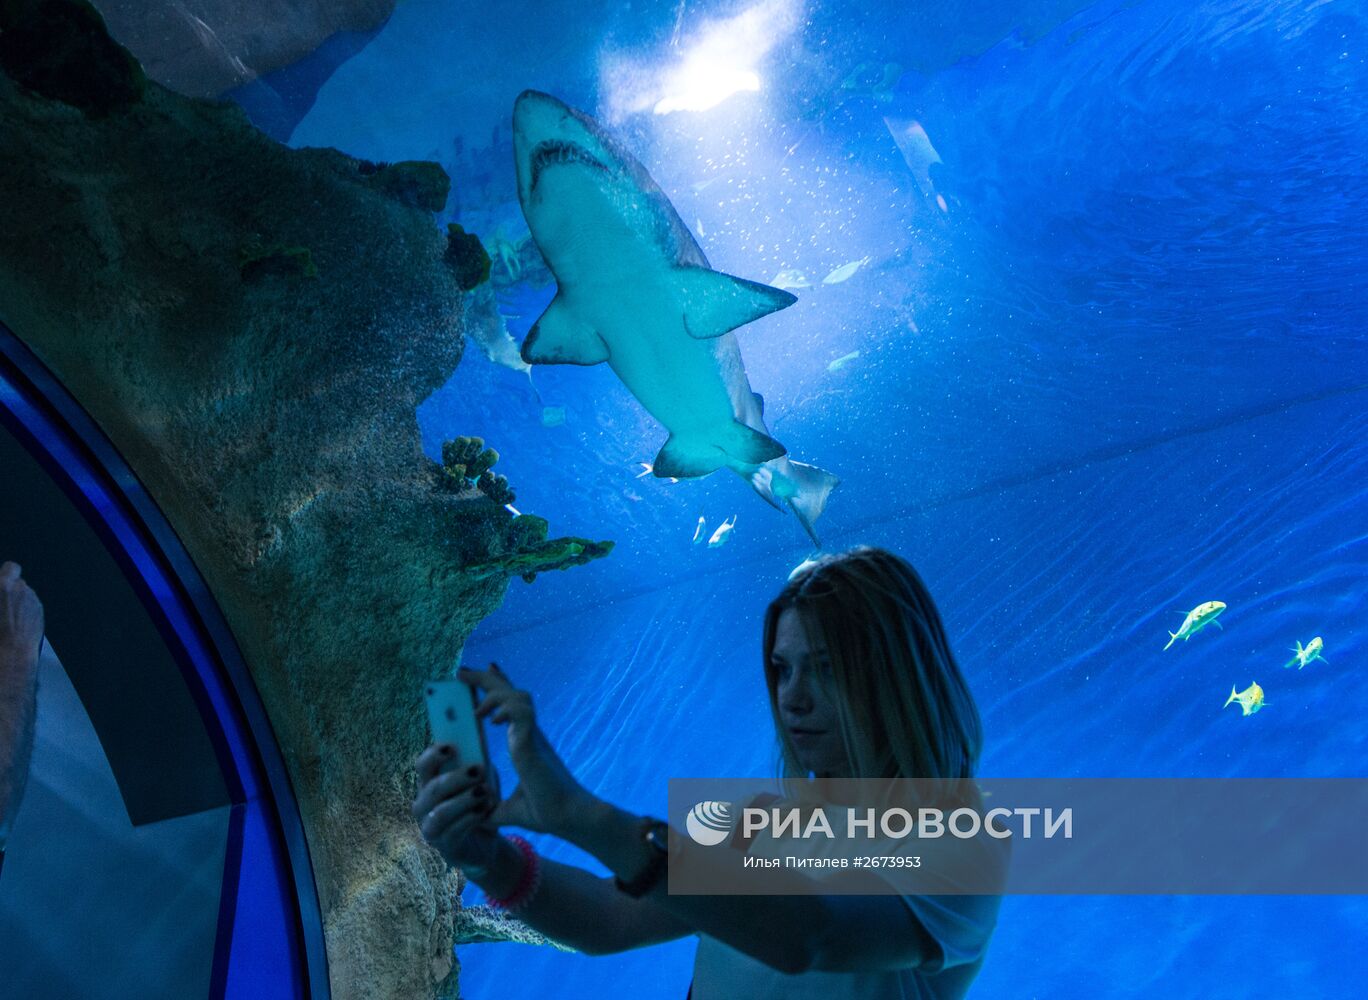 Центр океанографии и морской биологии "Москвариум" открылся на ВДНХ